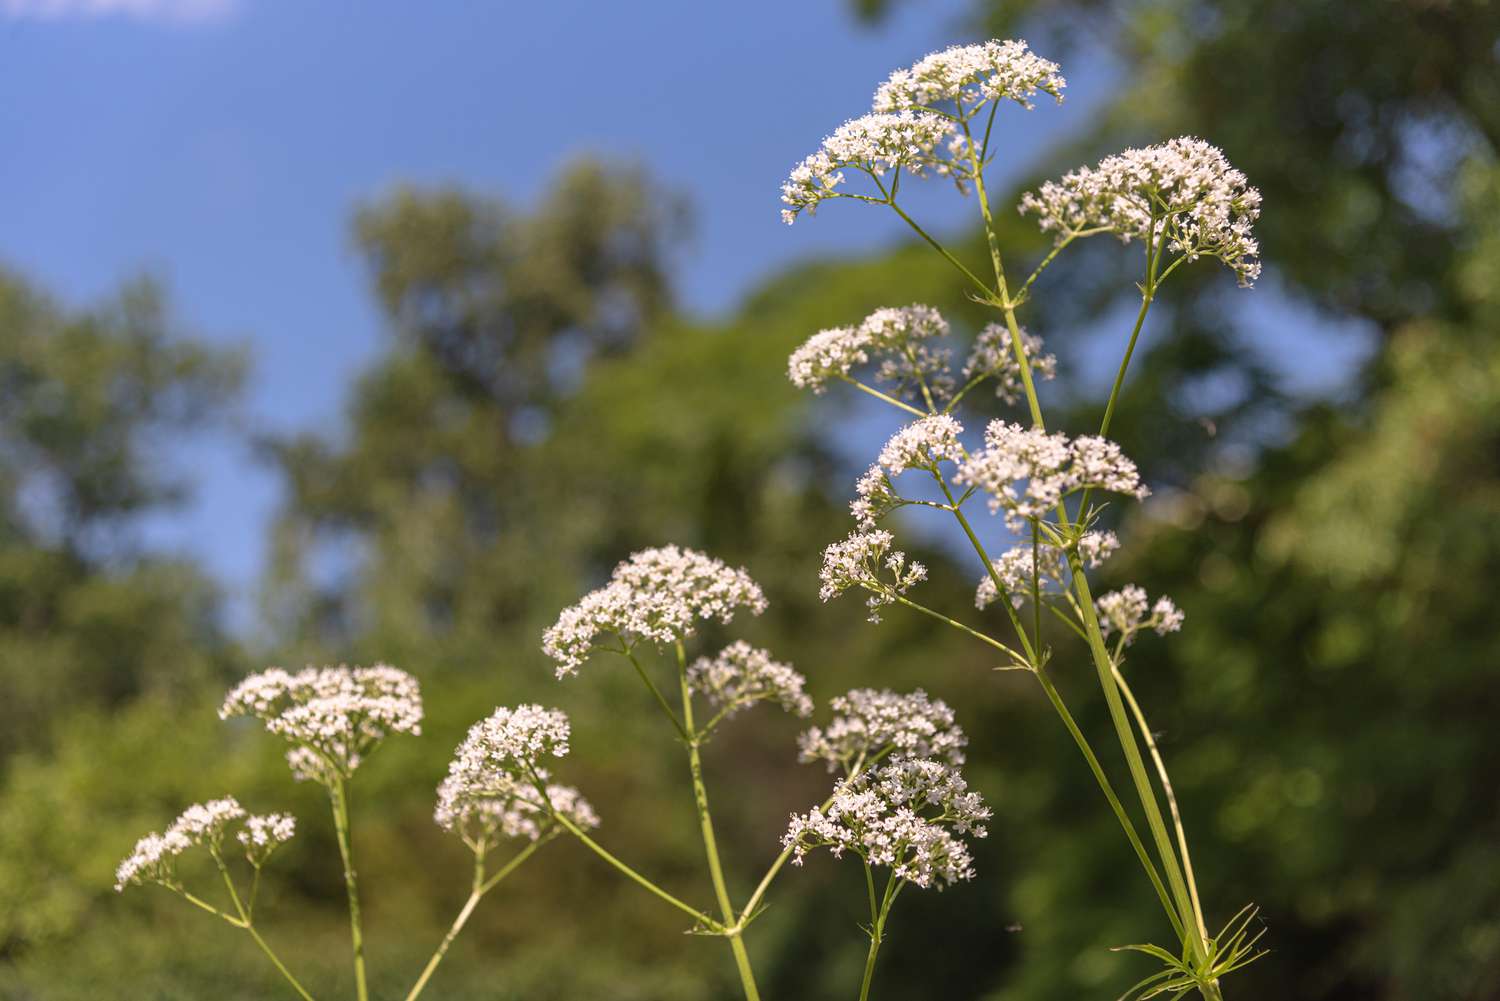 Baldrianpflanze mit dünnen Blütenstängeln und kleinen weißen Blütenbüscheln an der Spitze im Sonnenlicht